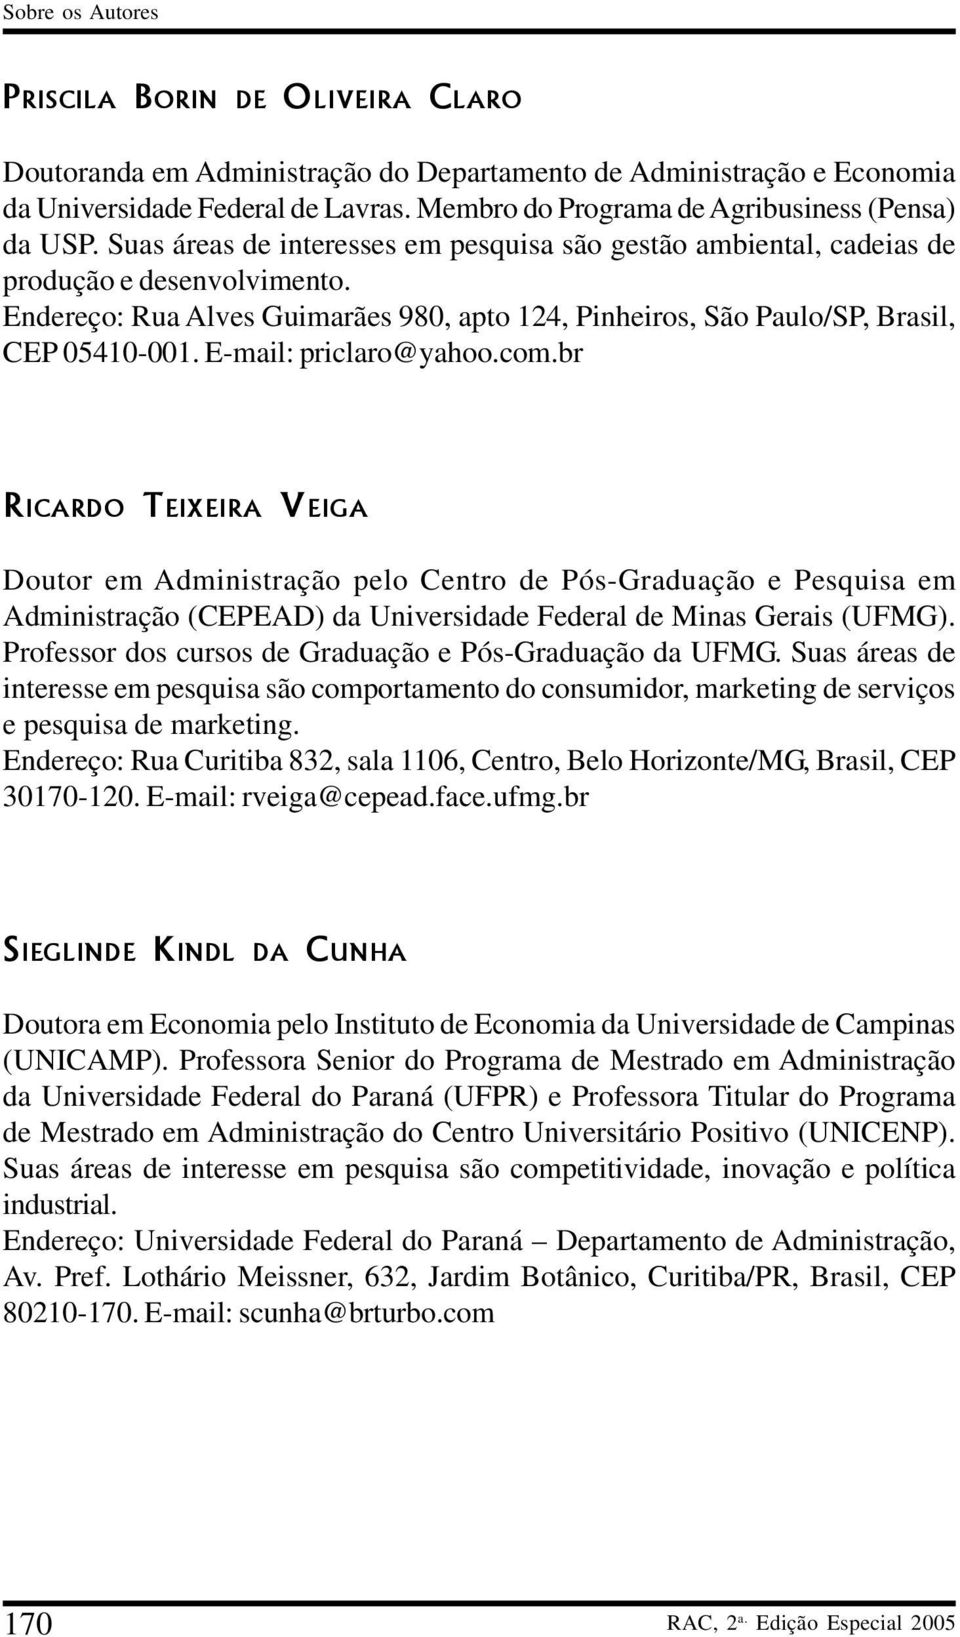 E-mail: priclaro@yahoo.com.br RICARDO TEIXEIRA VEIGA Doutor em Administração pelo Centro de Pós-Graduação e Pesquisa em Administração (CEPEAD) da Universidade Federal de Minas Gerais (UFMG).